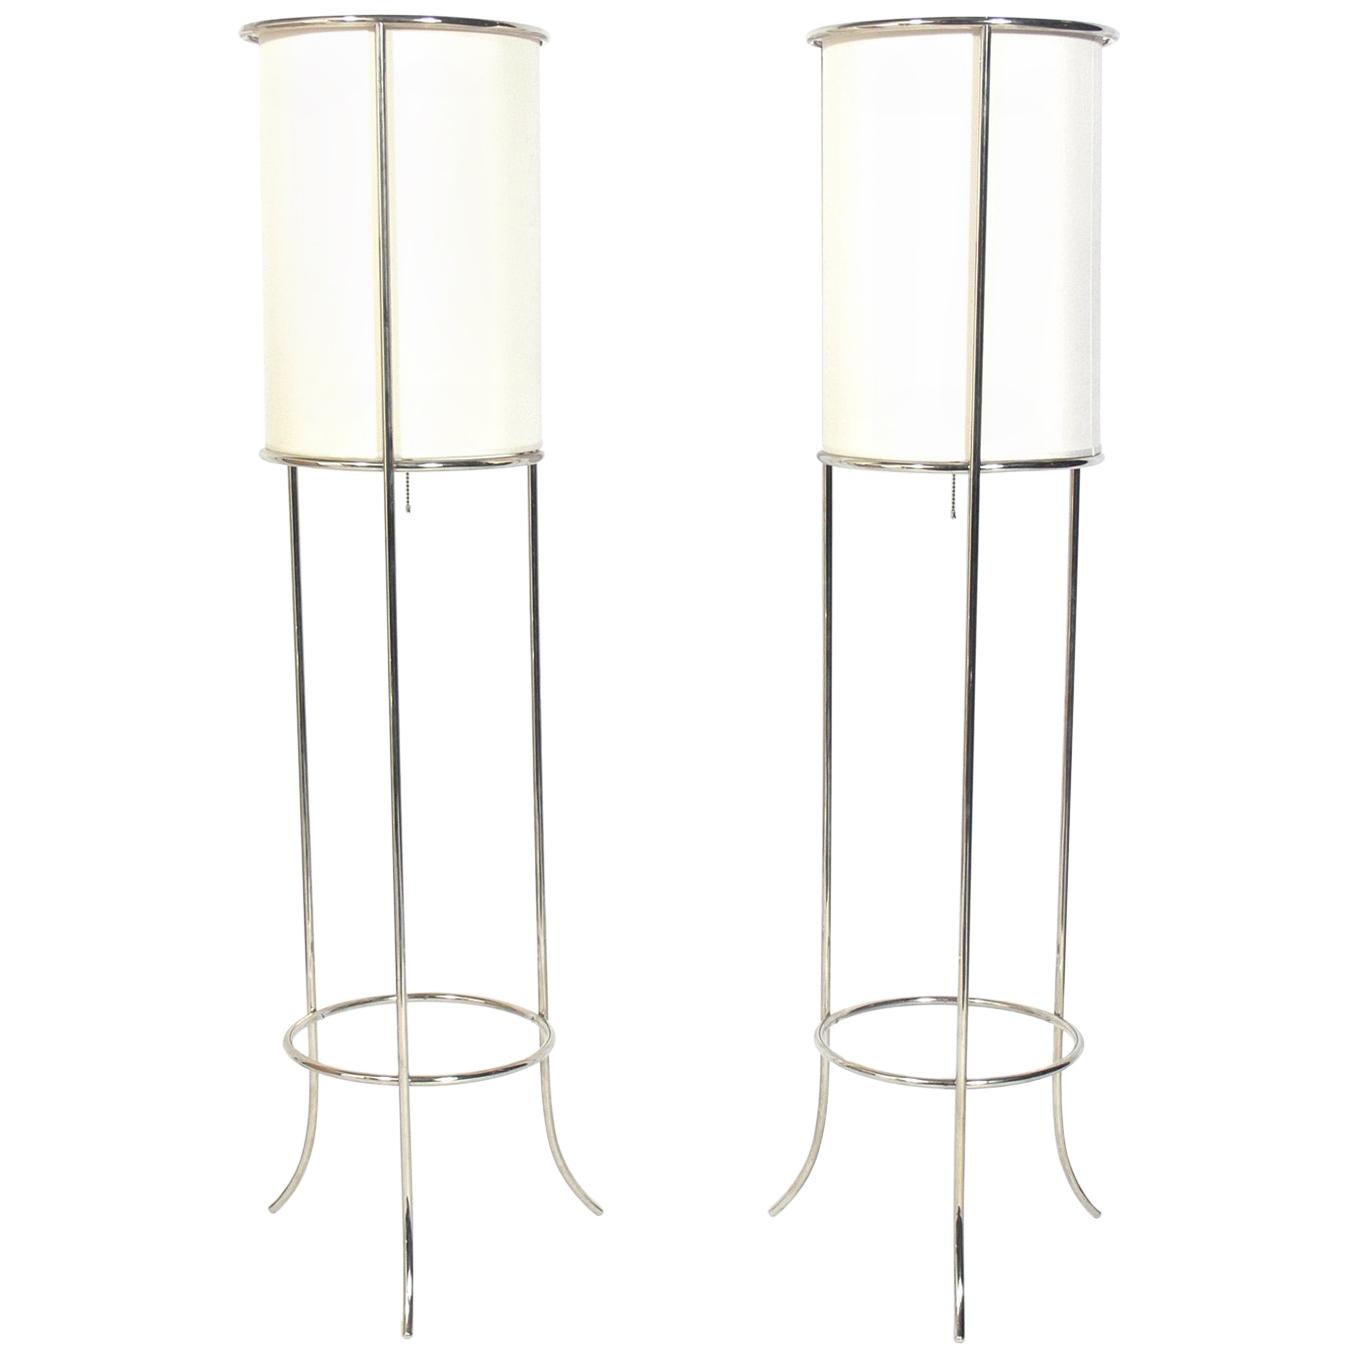 Pair of Nickel Floor Lamps Attributed to T.H. Robsjohn-Gibbings